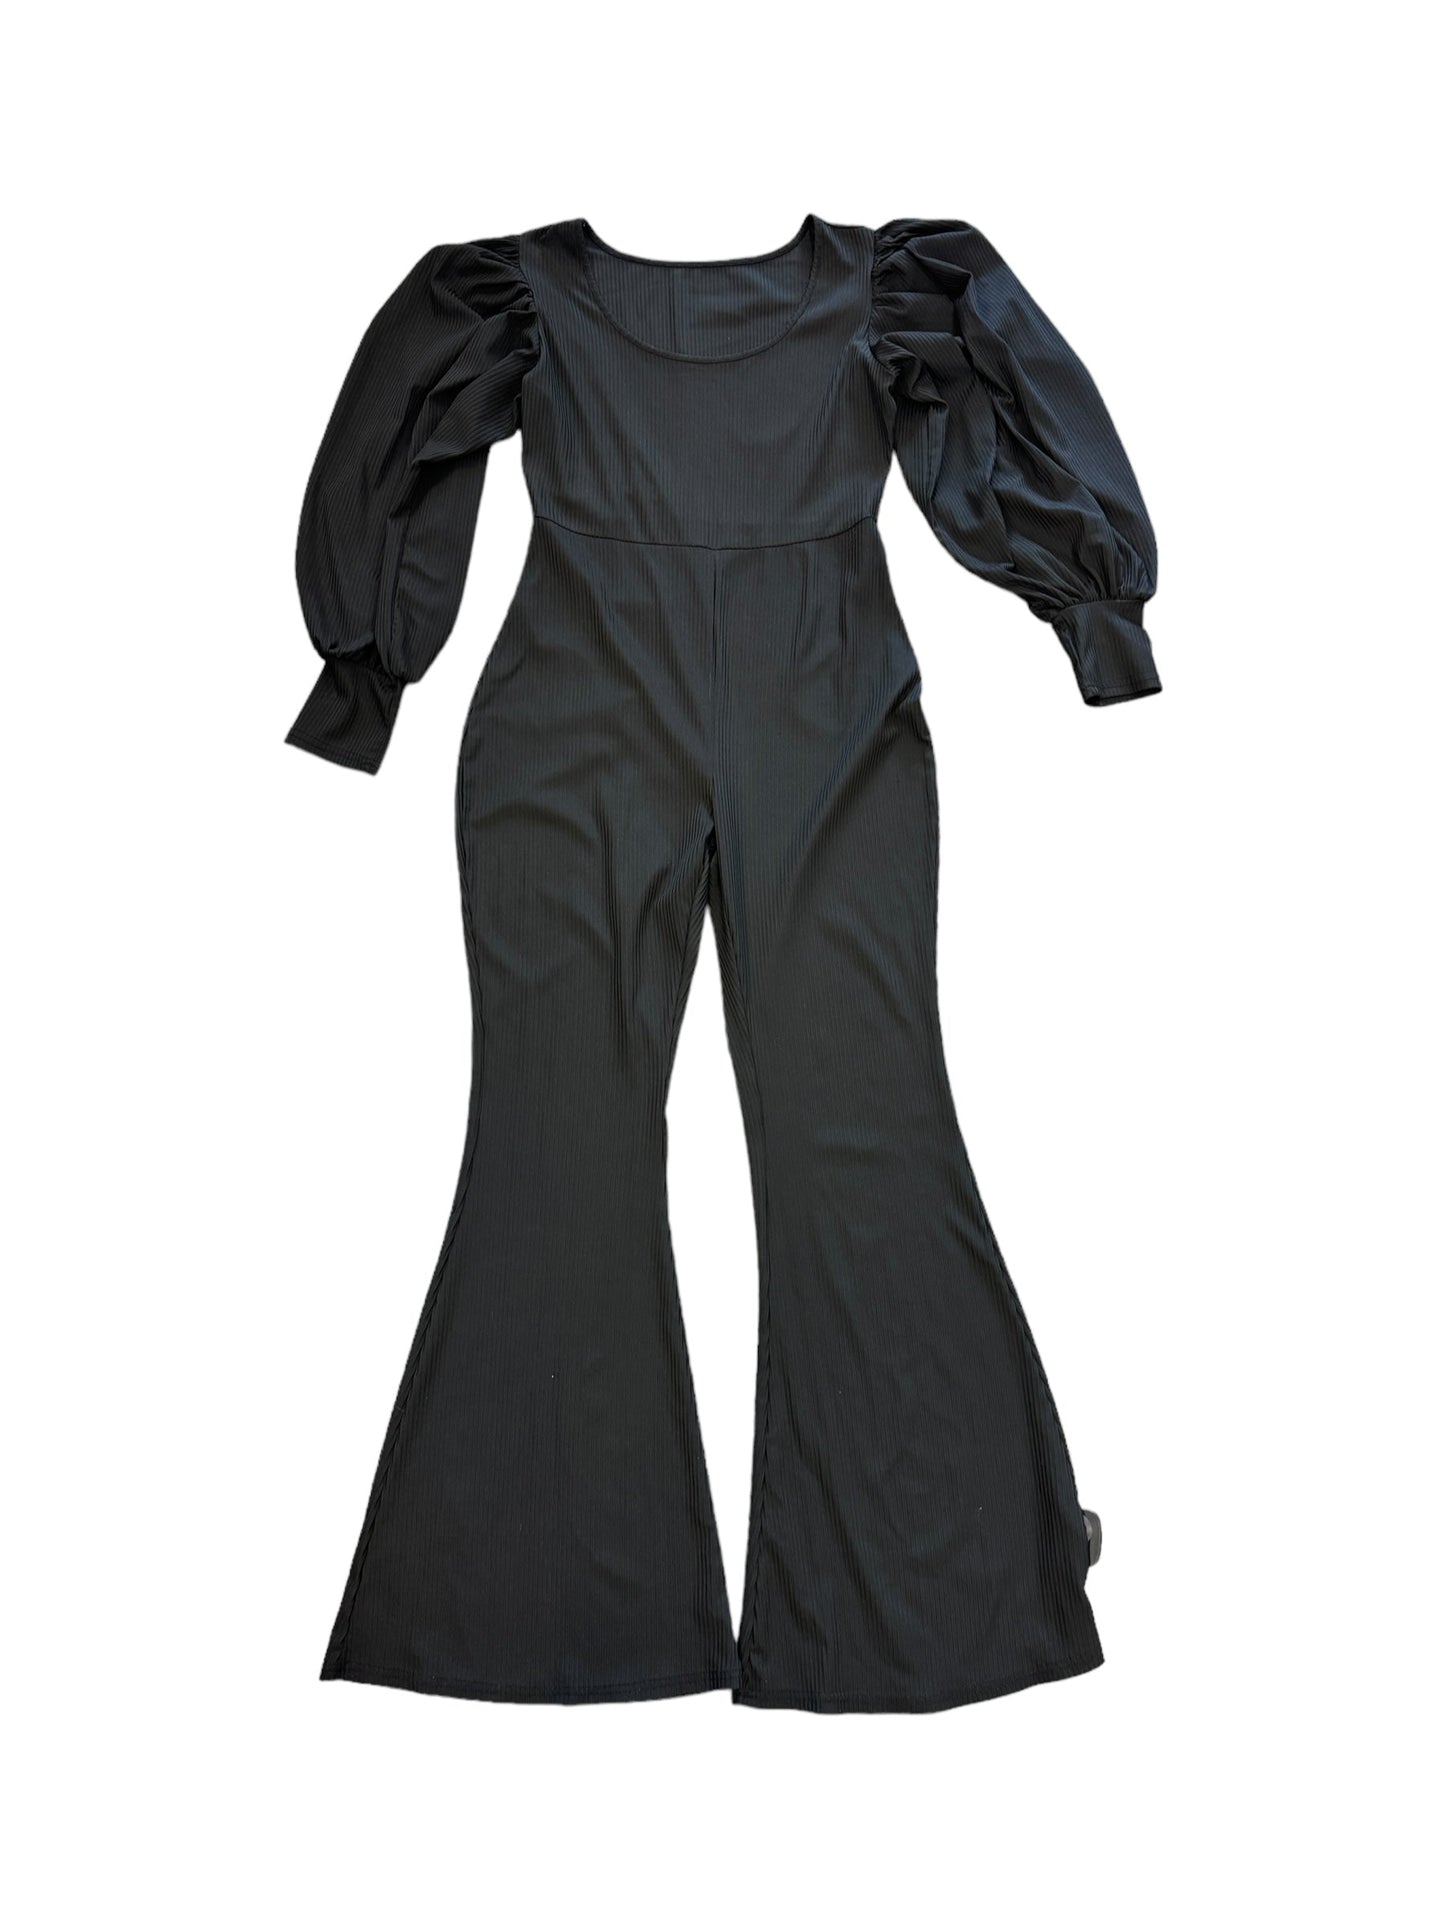 Black Jumpsuit Clothes Mentor, Size 10